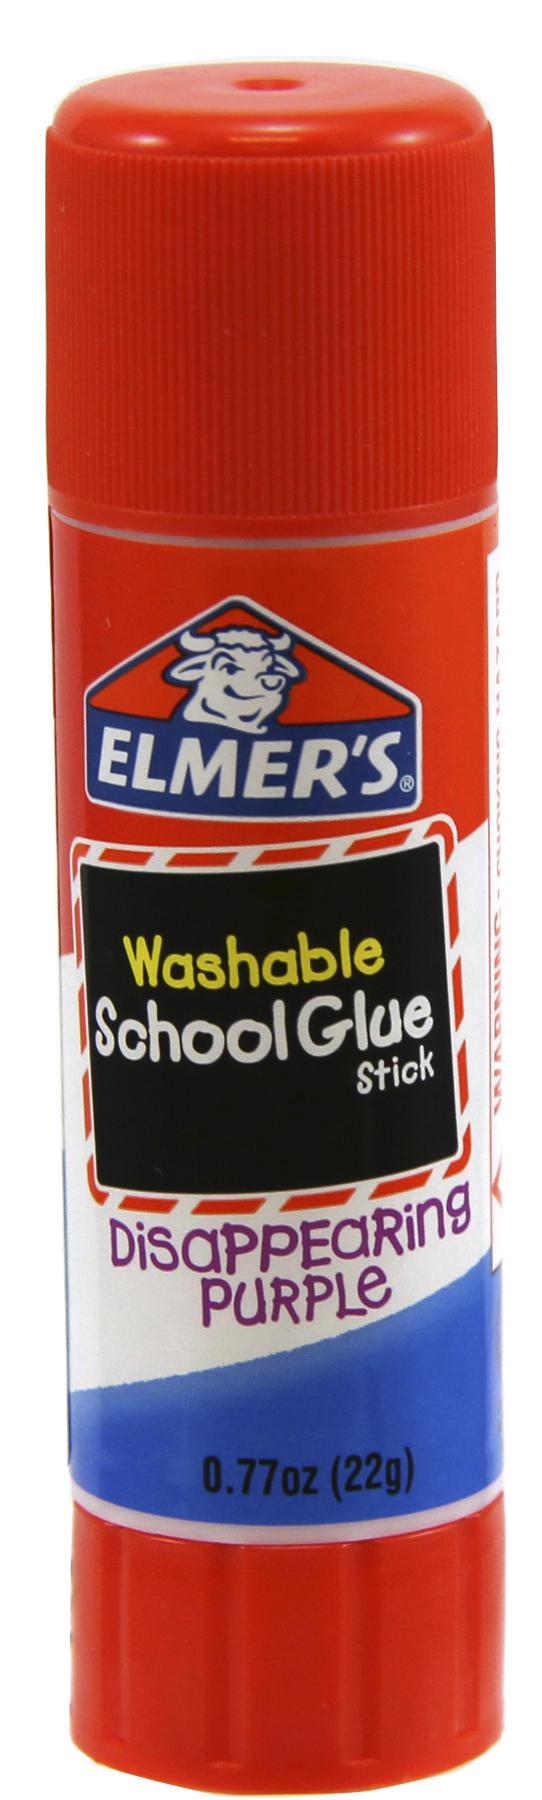 Elmer's All-Purpose Glue Sticks, 0.77-Ounce Glue Sticks, 3 Count